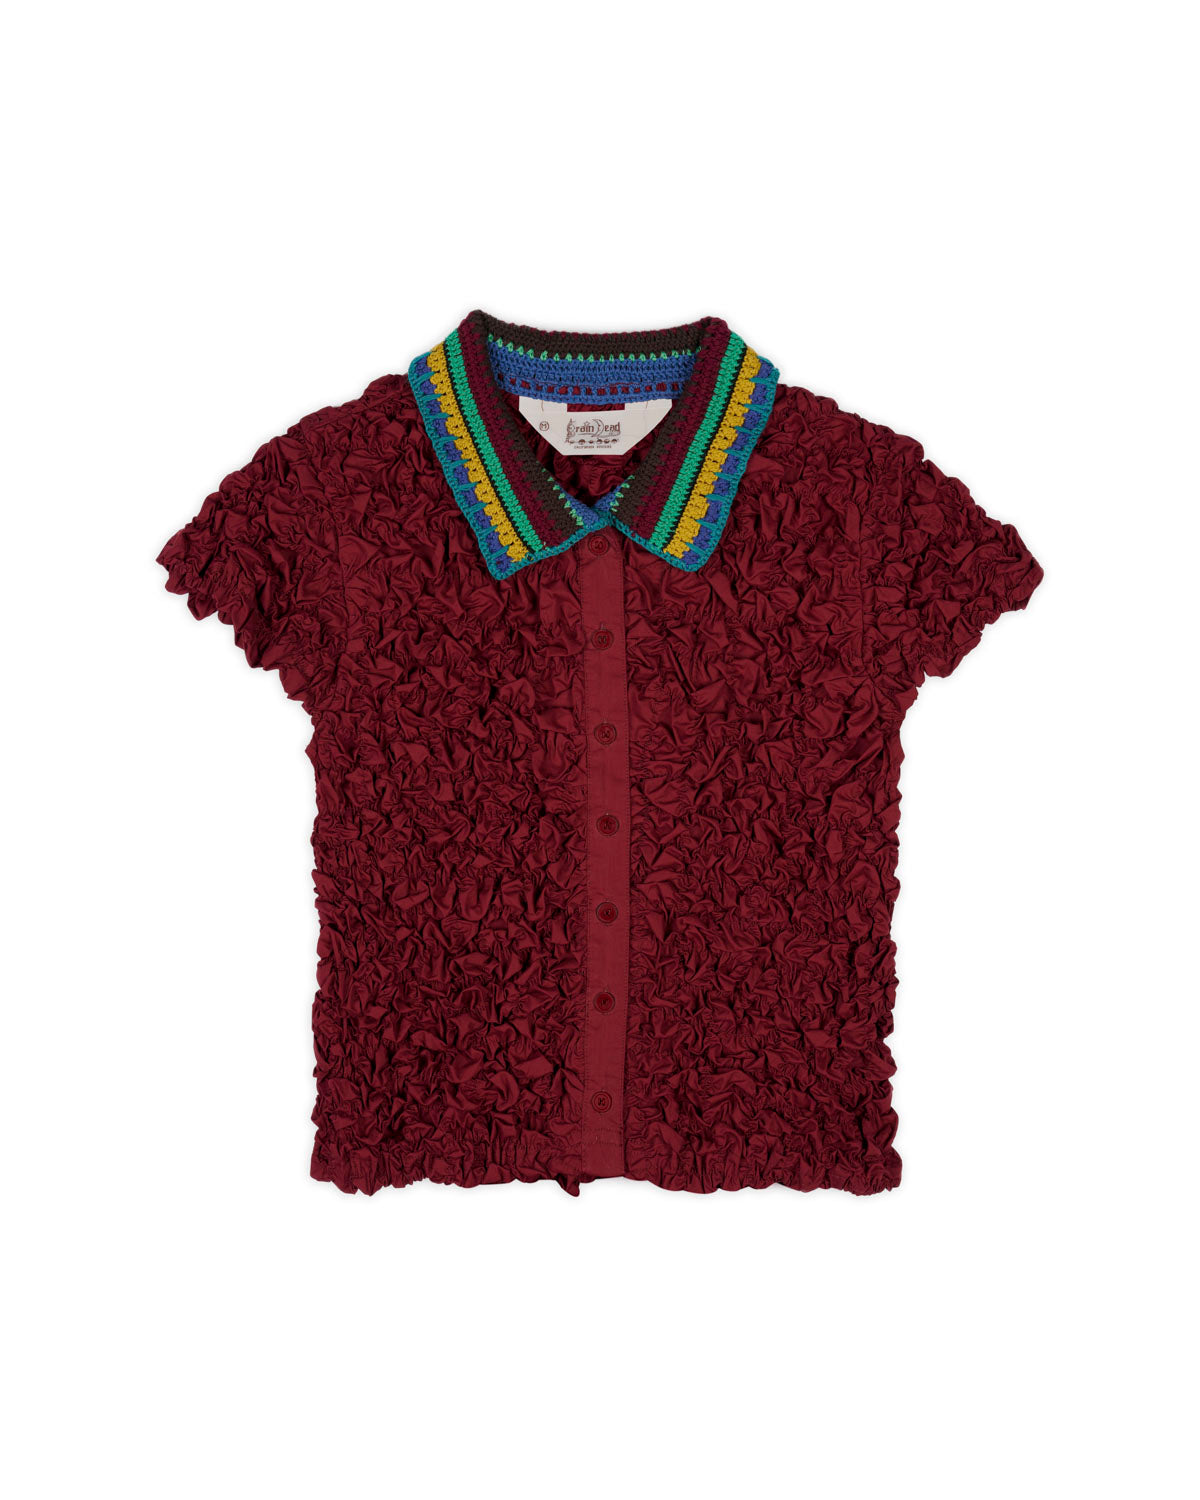 Crochet Collared Kass Shirt - Plum 1